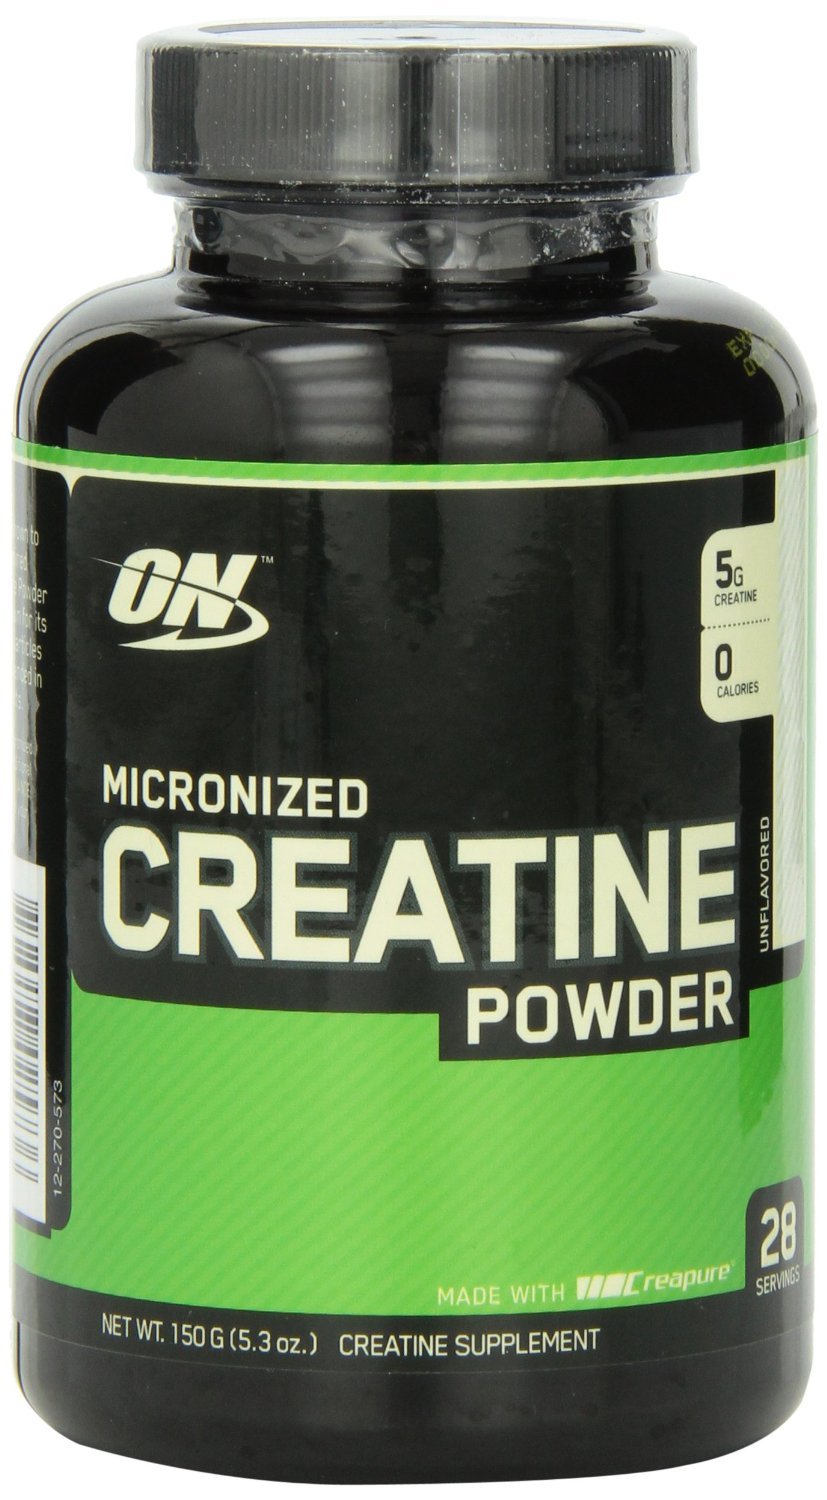 Creatine Powder, 150 г, Optimum Nutrition. Креатин моногидрат. Набор массы Энергия и выносливость Увеличение силы 